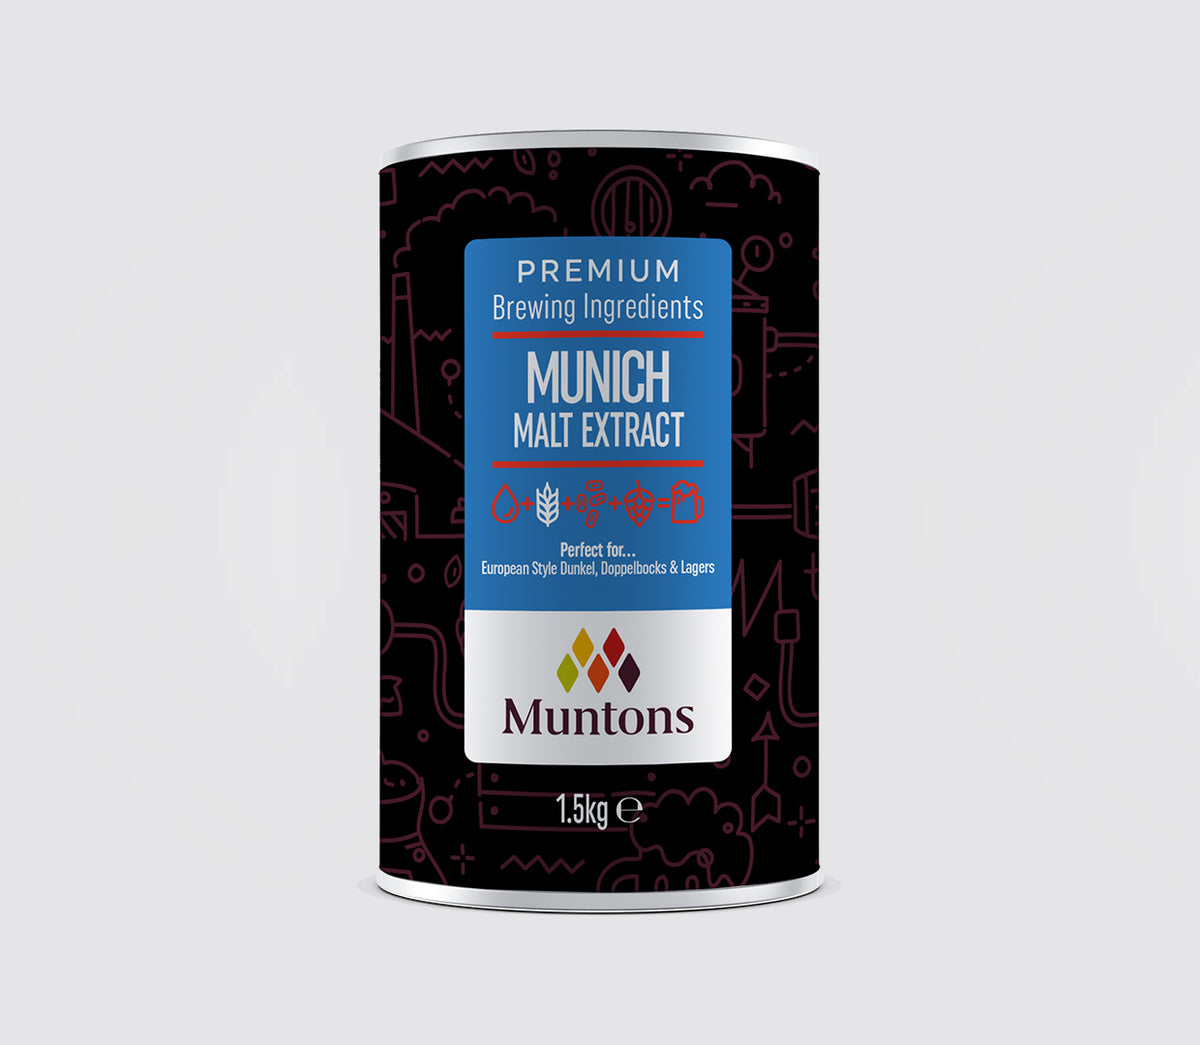 Muntons Munich Malt Extract 1.5kg - All Things Fermented | Home Brew Shop NZ | Supplies | Equipment